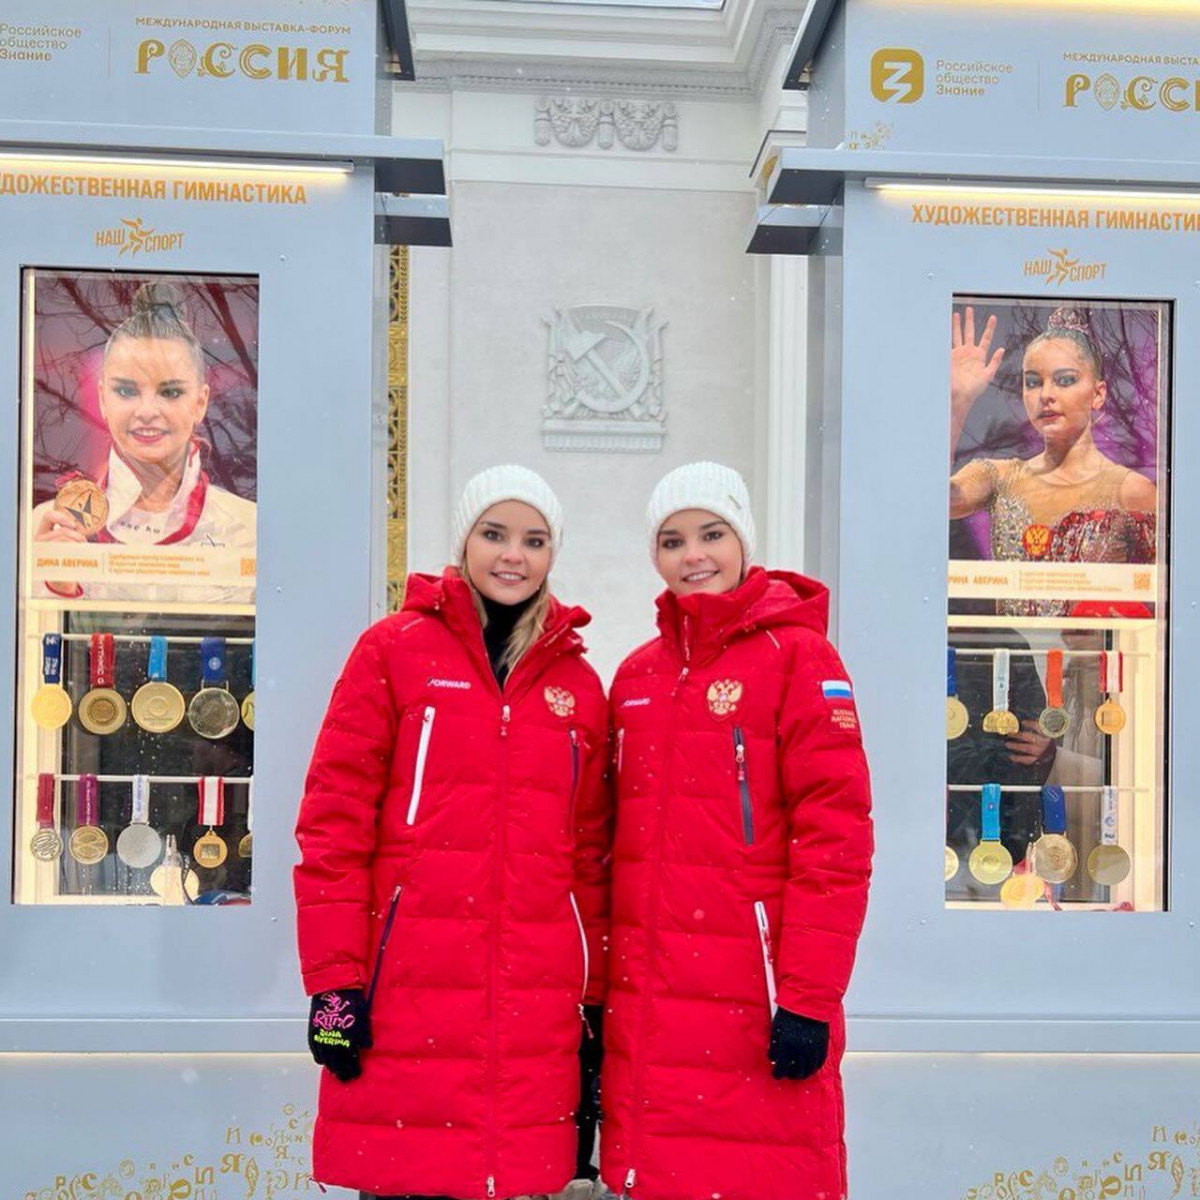 Нижегородские гимнастки Аверины открыли новую экспозицию на Аллее Славы на ВДНХ в Москве